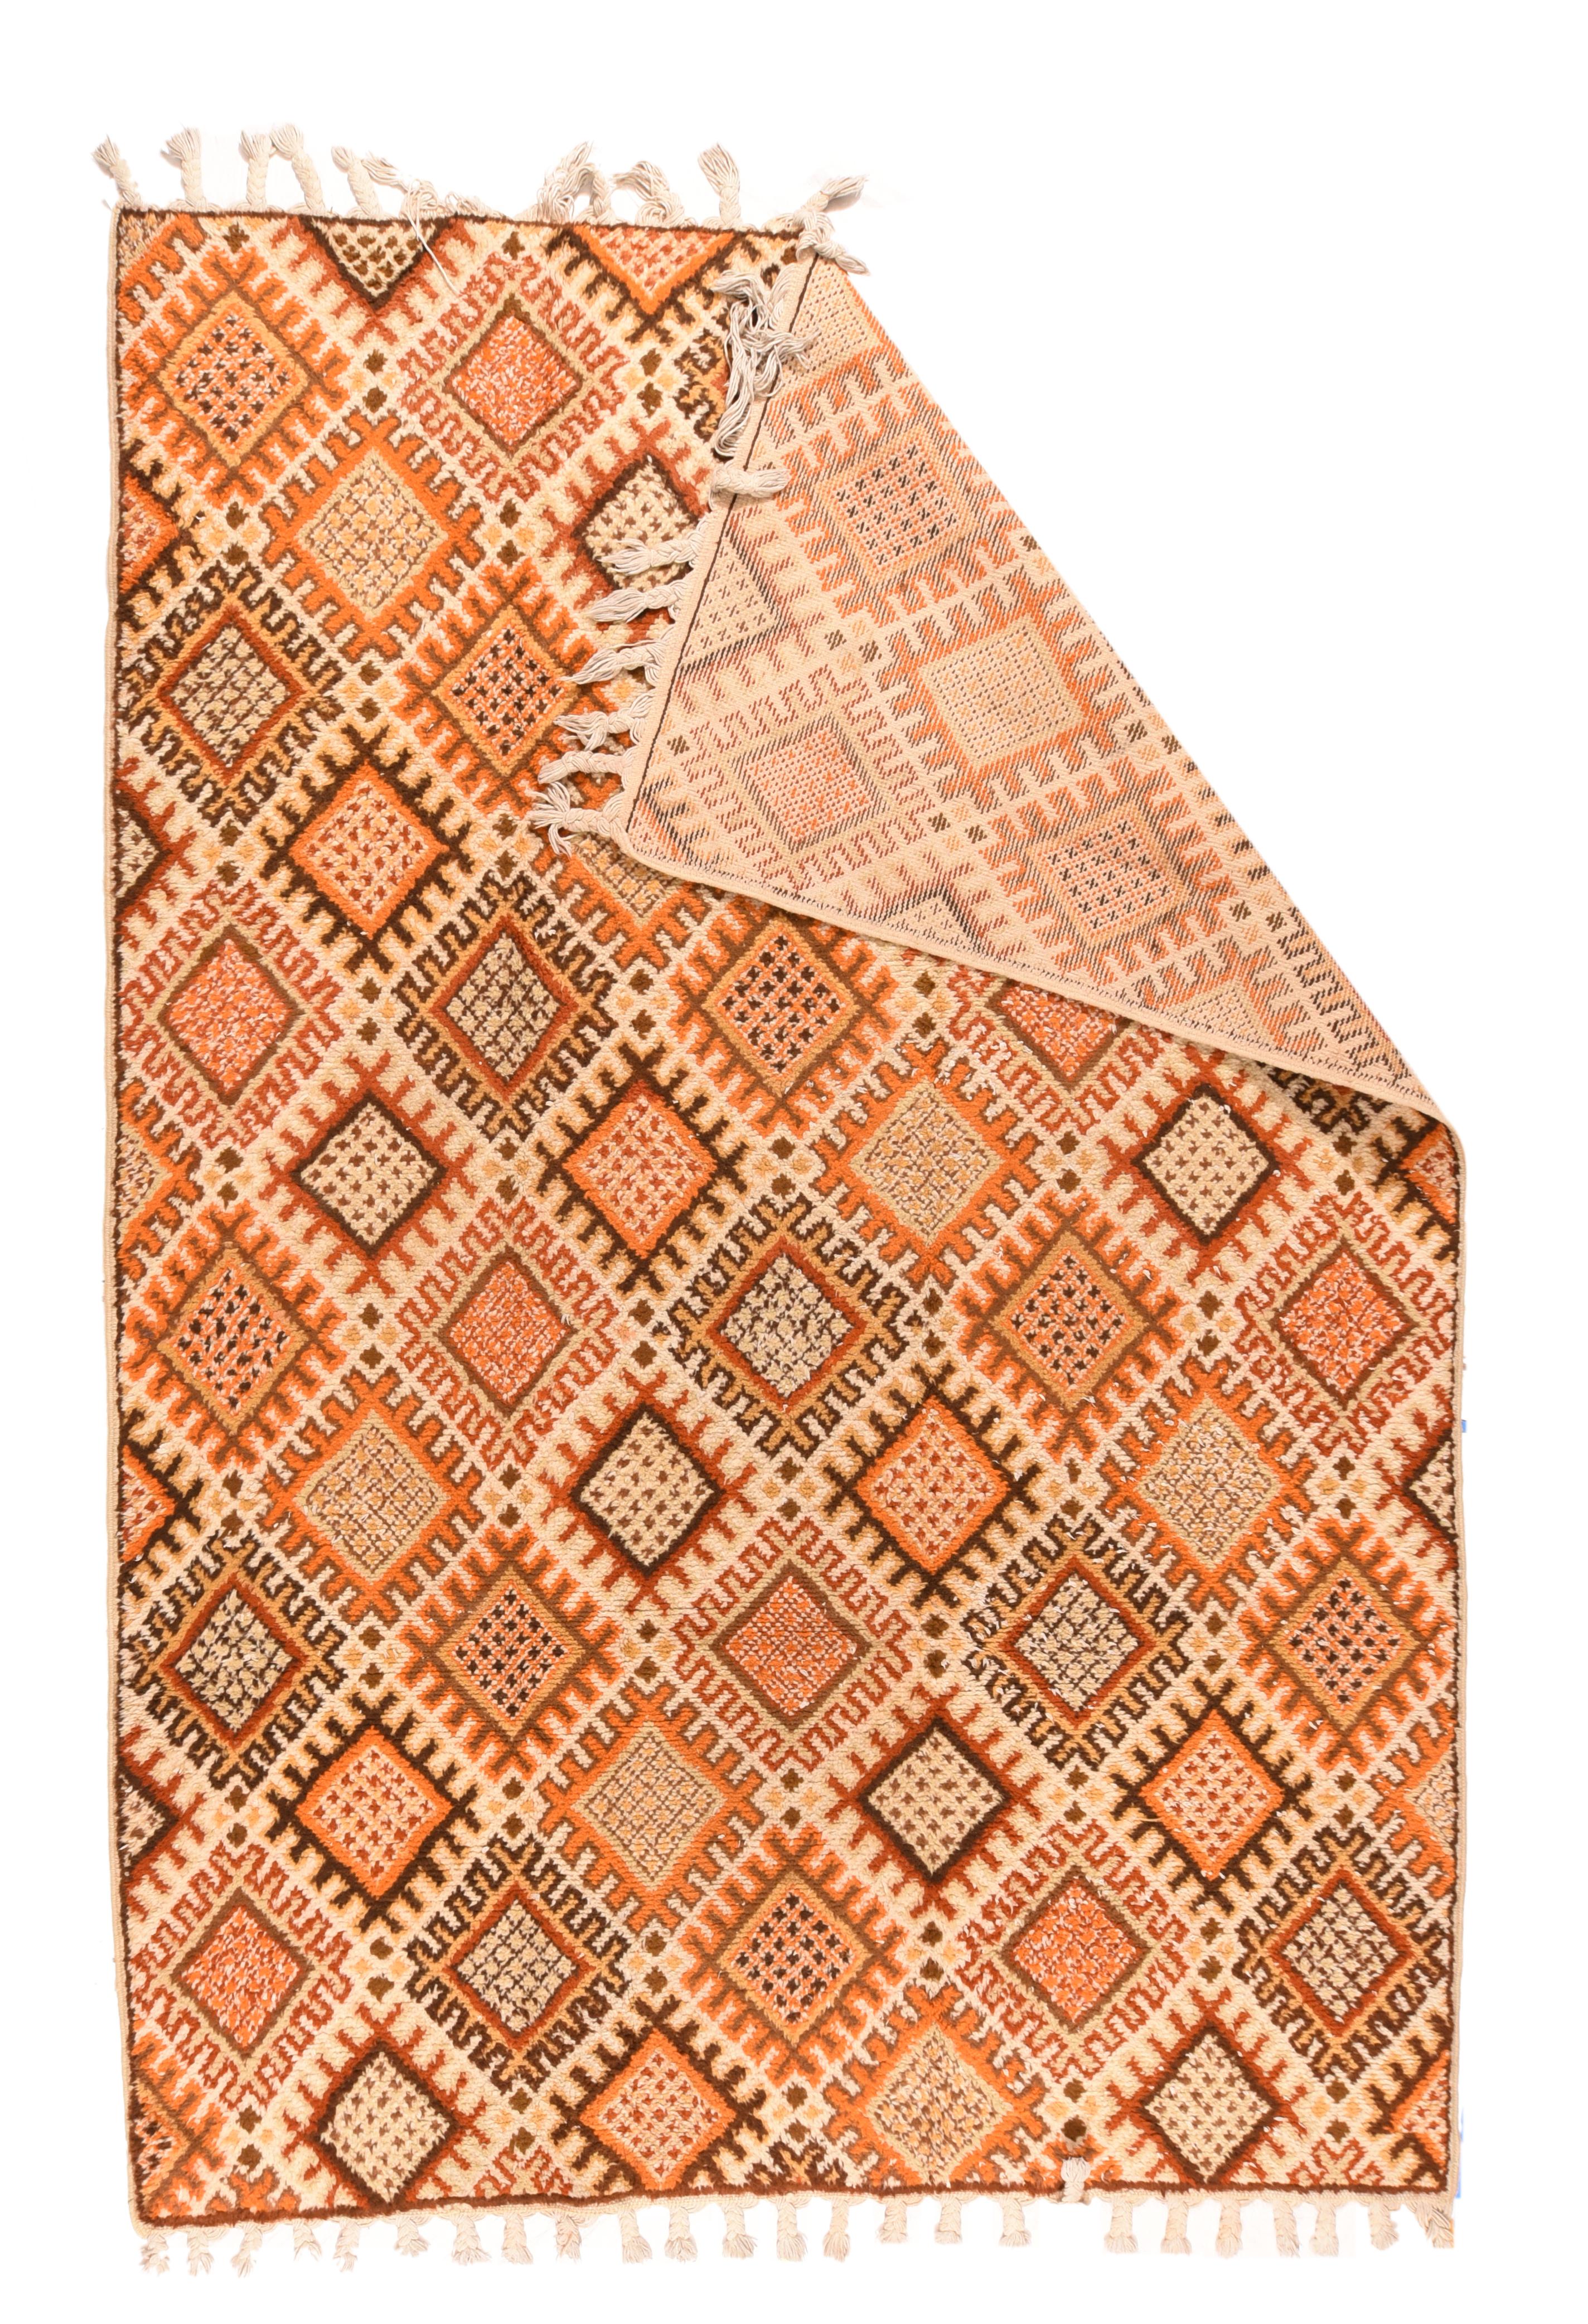 Vintage Moroccan Rug 6'8'' x 9'9''. Das üppige ecrufarbene, im Wesentlichen randlose Feld ist gleichmäßig mit gerasterten Rauten mit Kreuzschraffur in Rot-, Stroh-, Goldruten-, Mandarinen-, Rost- und Schokoladentönen bedeckt. Grundlage Baumwolle.